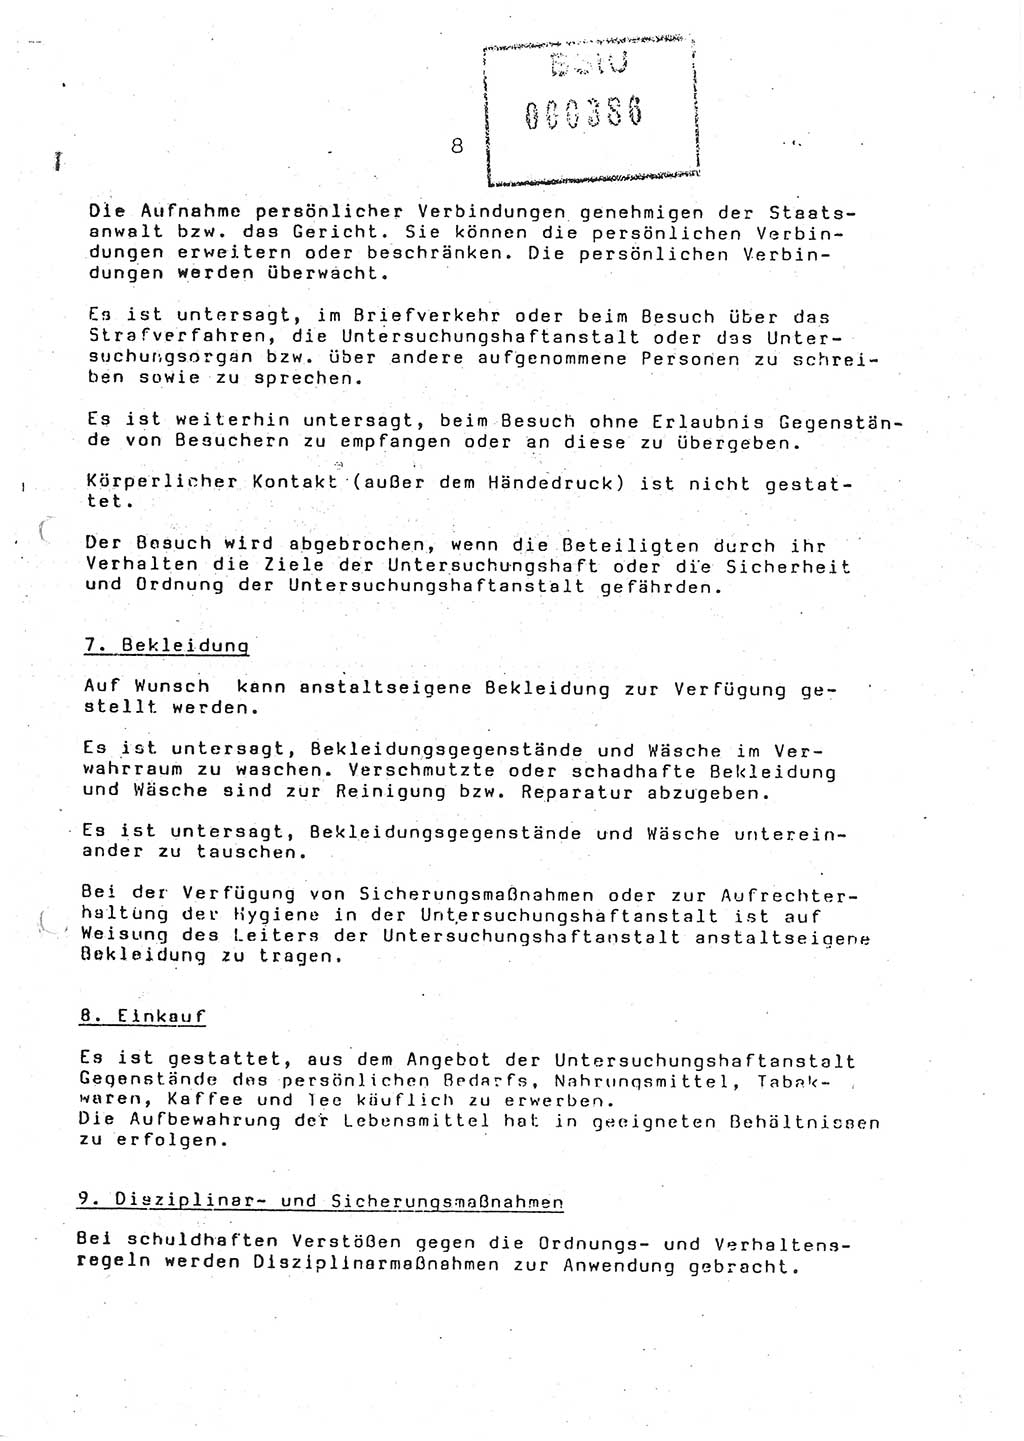 Ordnungs- und Verhaltensregeln (Hausordnung) für in die Untersuchungshaftanstalt (UHA) aufgenommene Personen, Ministerium für Staatssicherheit (MfS) [Deutsche Demokratische Republik (DDR)], Abteilung ⅩⅣ, Leiter, Büro der Leitung (BdL) 35/86, Berlin, 29.1.1986, Blatt 8 (H.-Ordn. UHA MfS DDR Abt. ⅩⅣ Ltr. BdL/35/86 1986, Bl. 8)